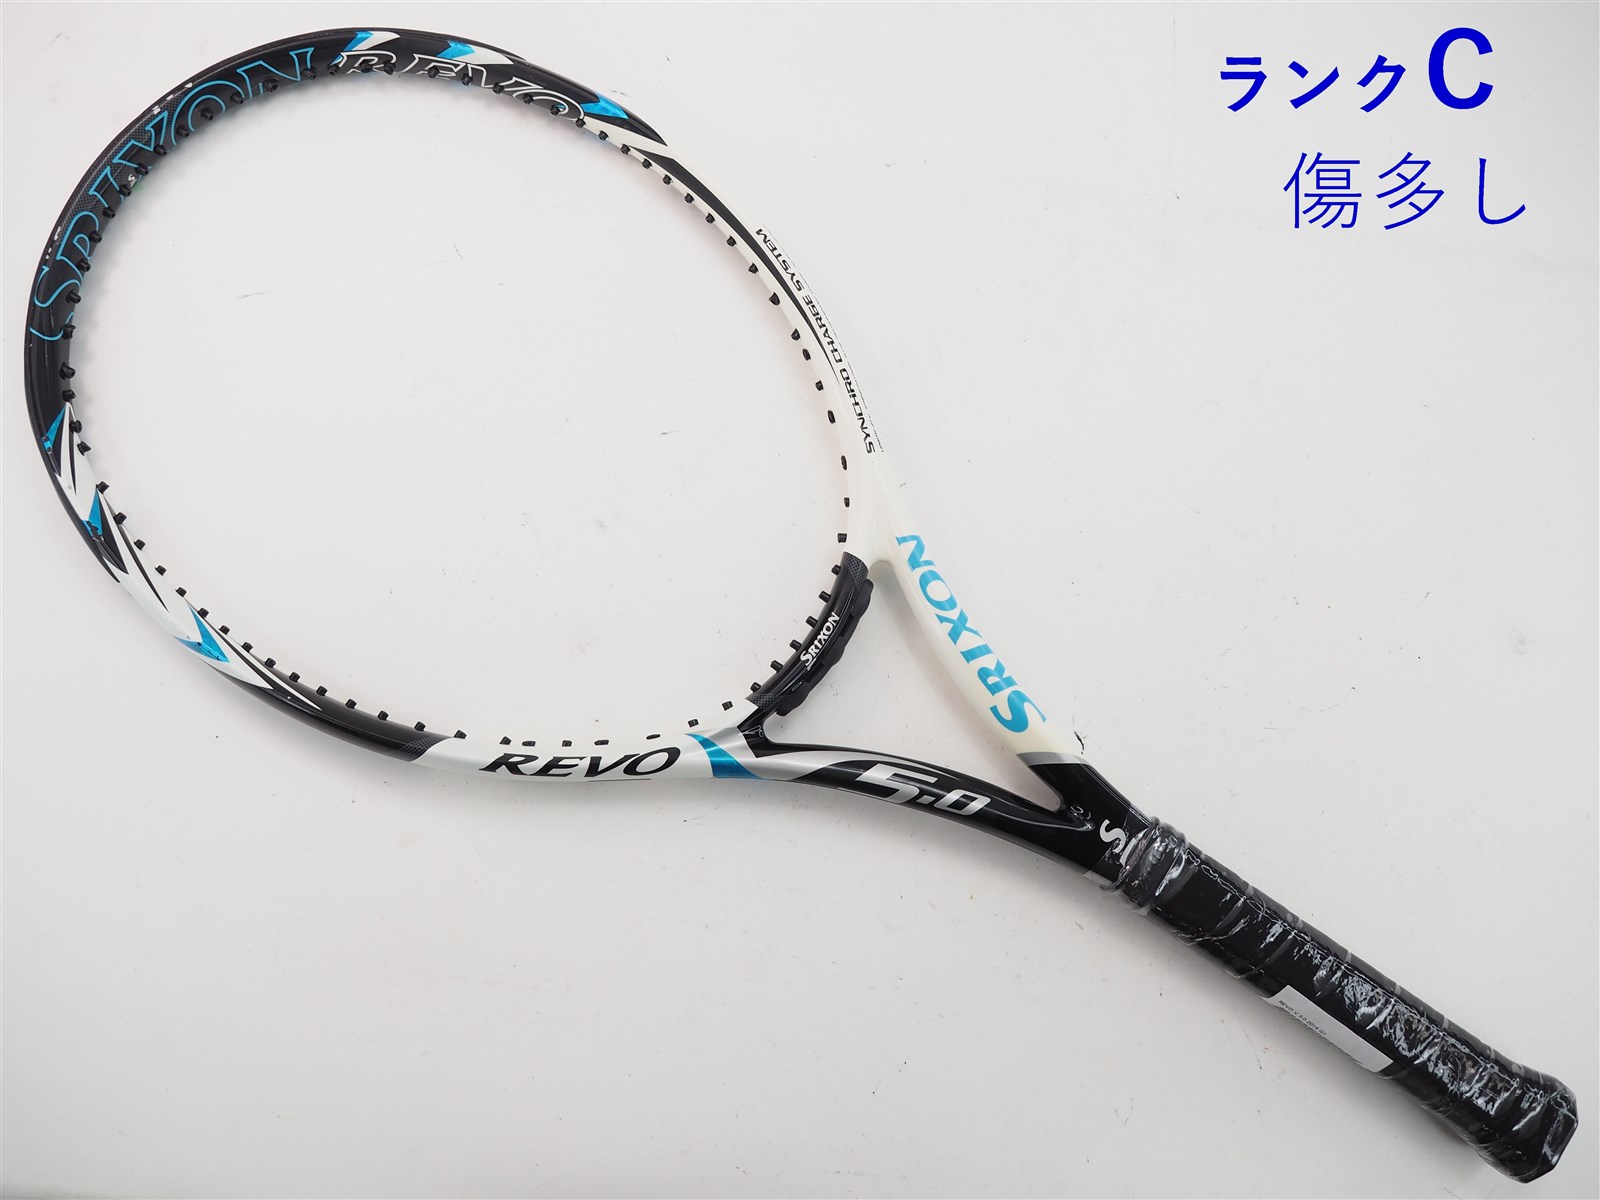 テニスラケット スリクソン レヴォ ブイ 5.0 2014年モデル (G2)SRIXON REVO V 5.0 2014B若干摩耗ありグリップサイズ